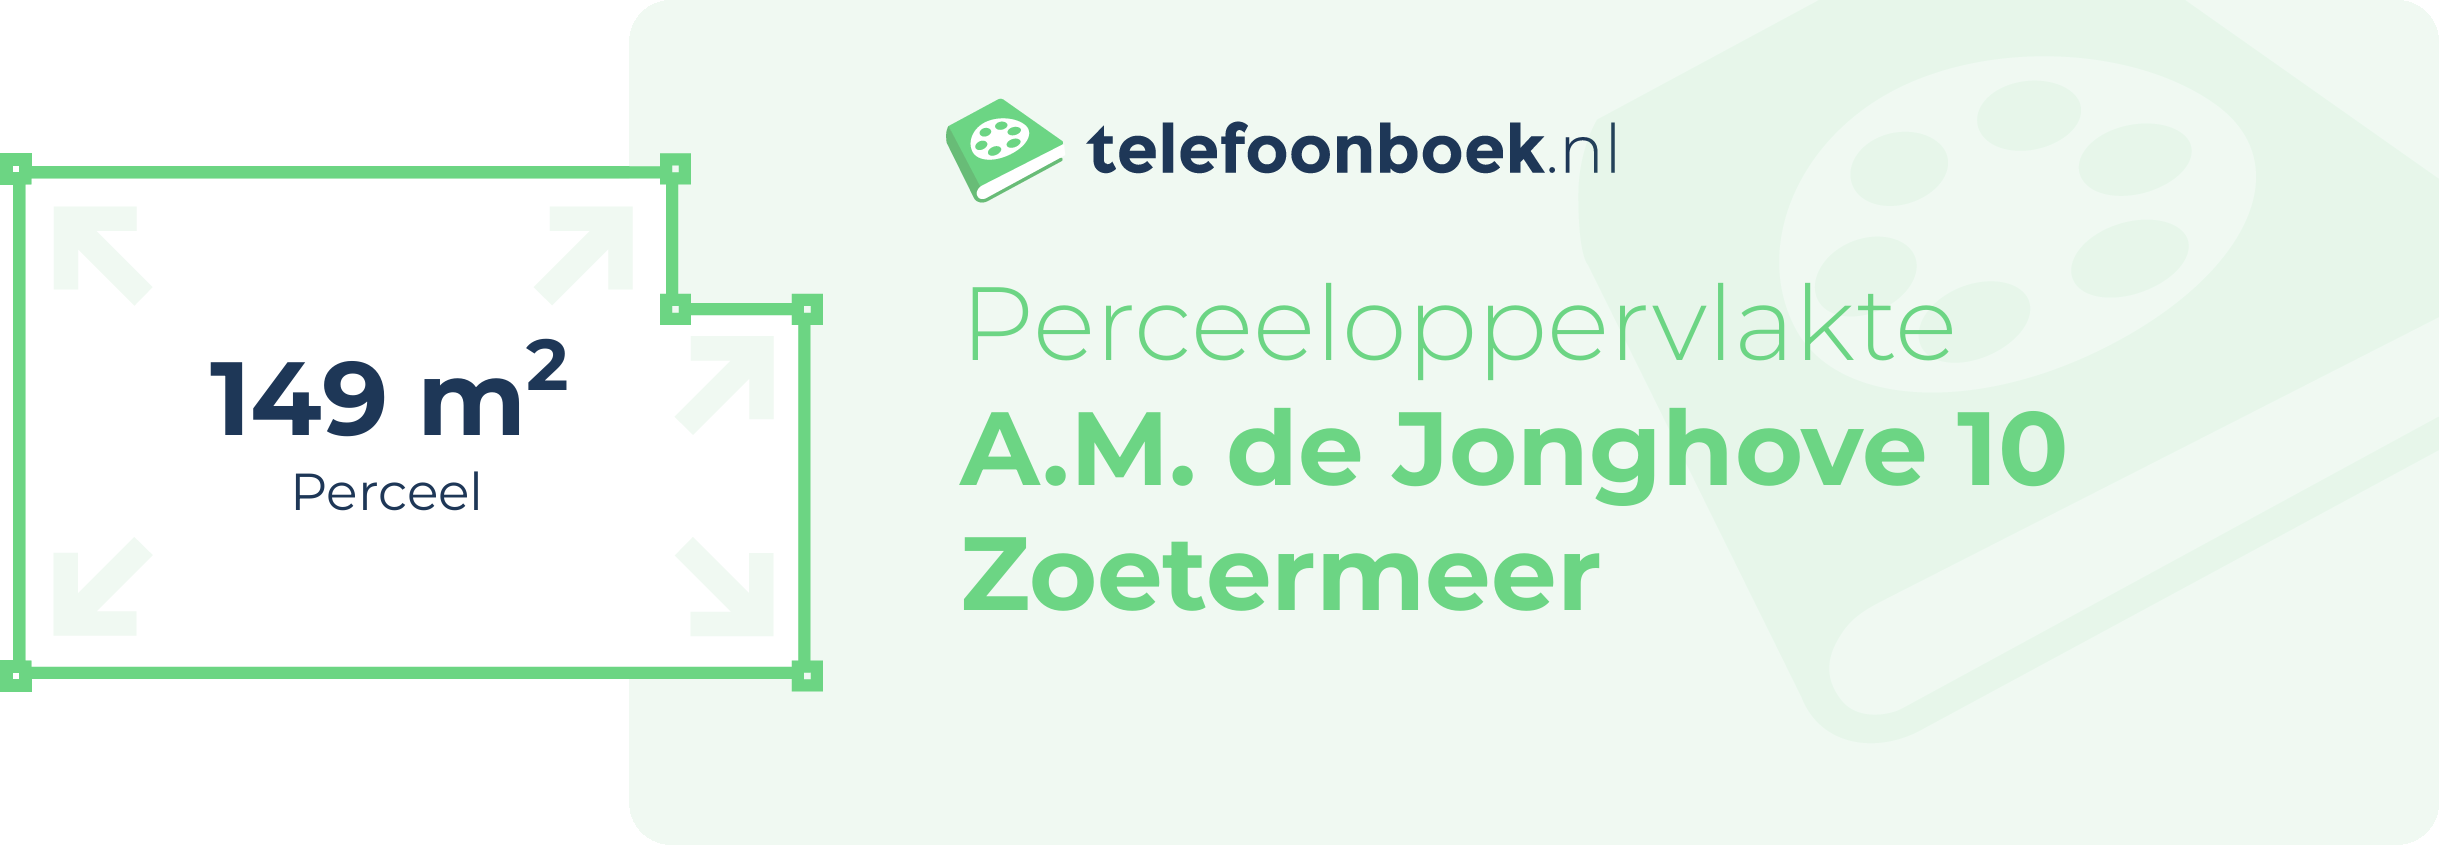 Perceeloppervlakte A.M. De Jonghove 10 Zoetermeer